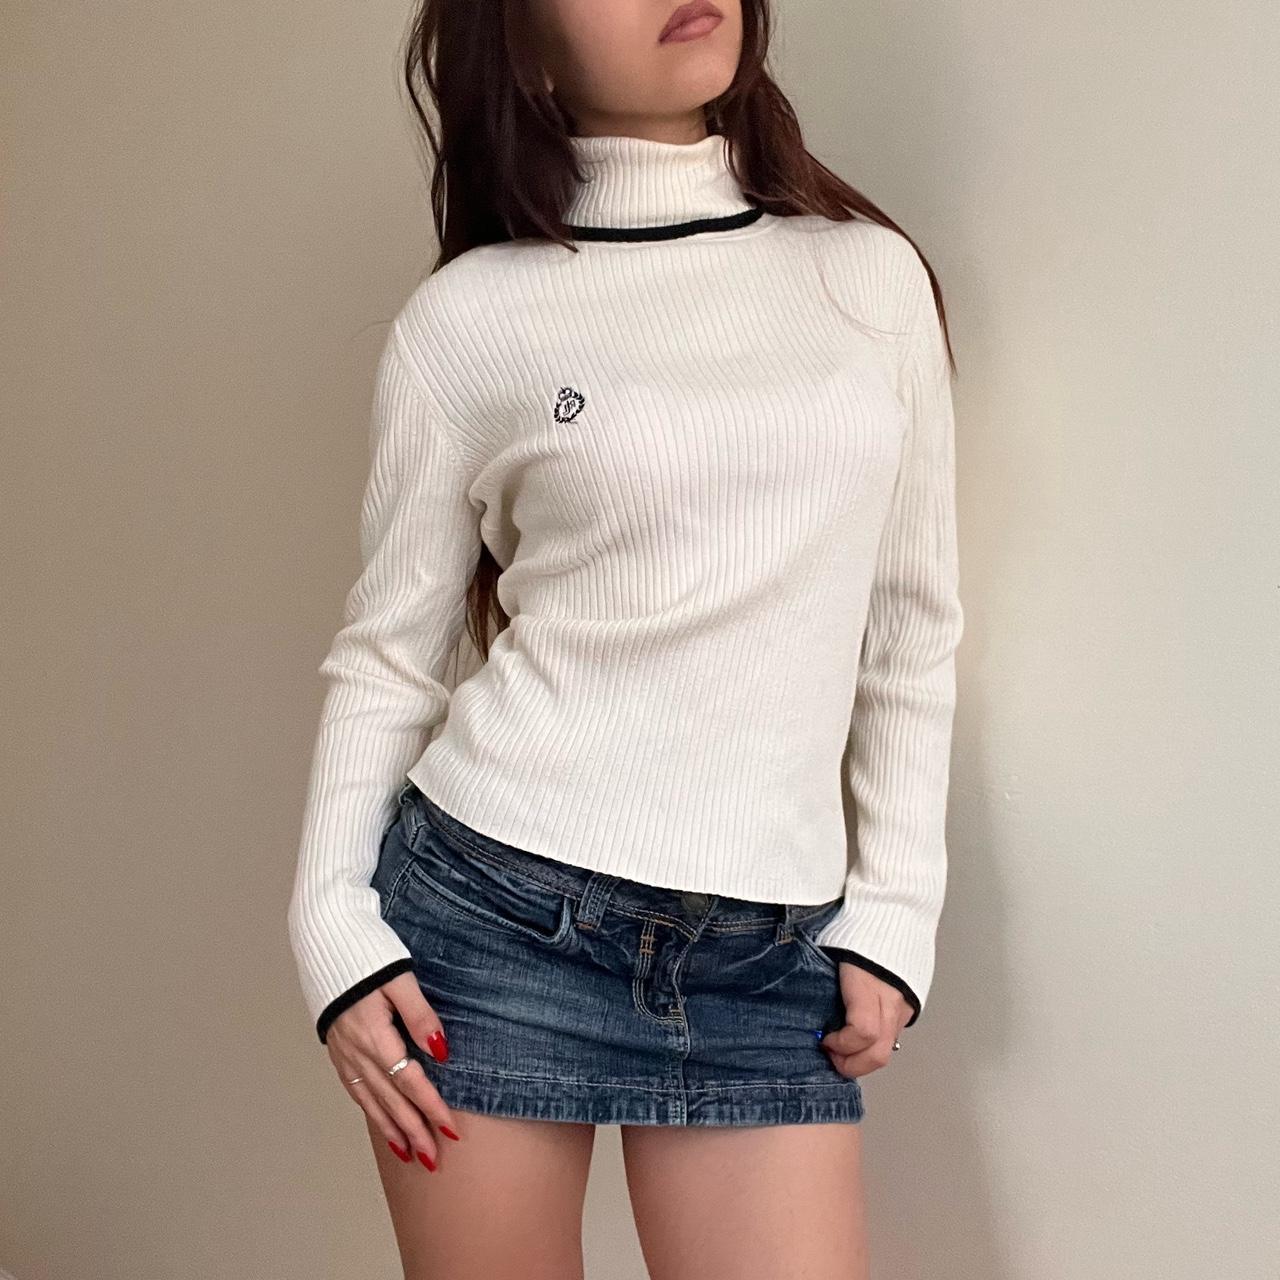 Ralph Lauren Women's Sweater - Cream - M